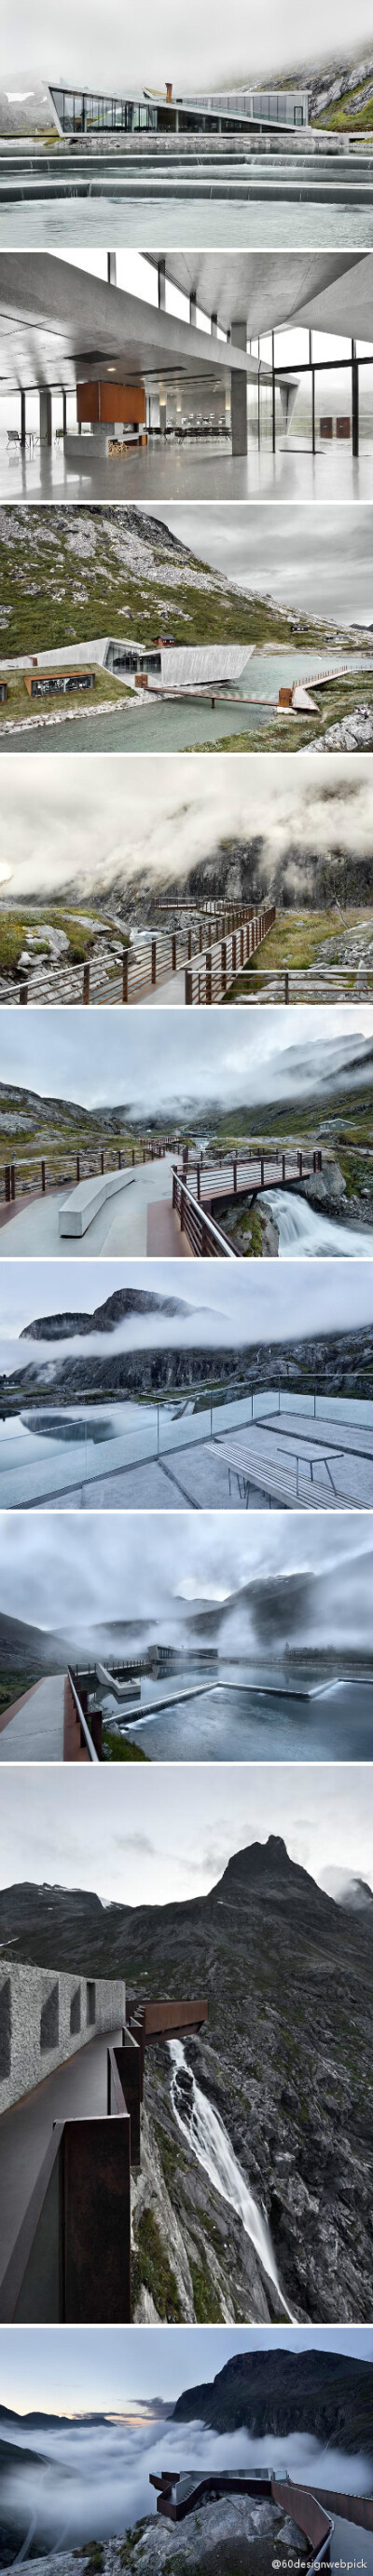 德国摄影工作室 diephotodesigner 在其官网更新了他们的新作 – 包括一系列景观线路与公共建筑，由挪威 Reiulf Ramstad 建筑师事务所设计的 TOURIST ROUTE TROLLSTIGEN 项目。http://t.cn/zl0PYes